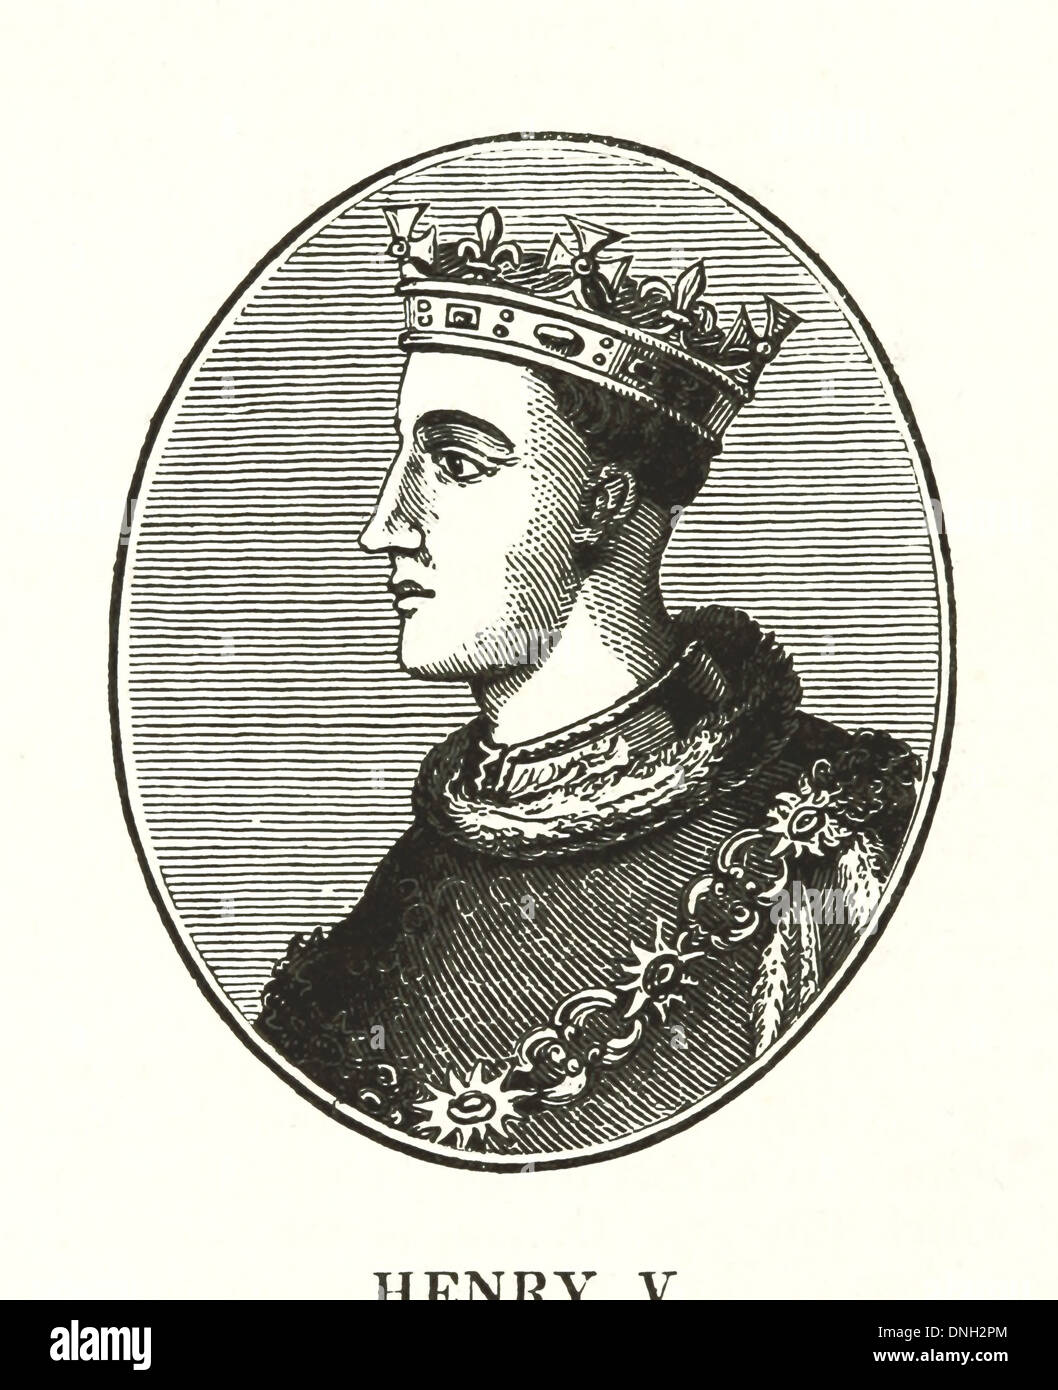 Enrique V (16 de septiembre de 1386 - 31 de agosto de 1422) - El Rey de Inglaterra desde 1413 hasta su muerte Foto de stock